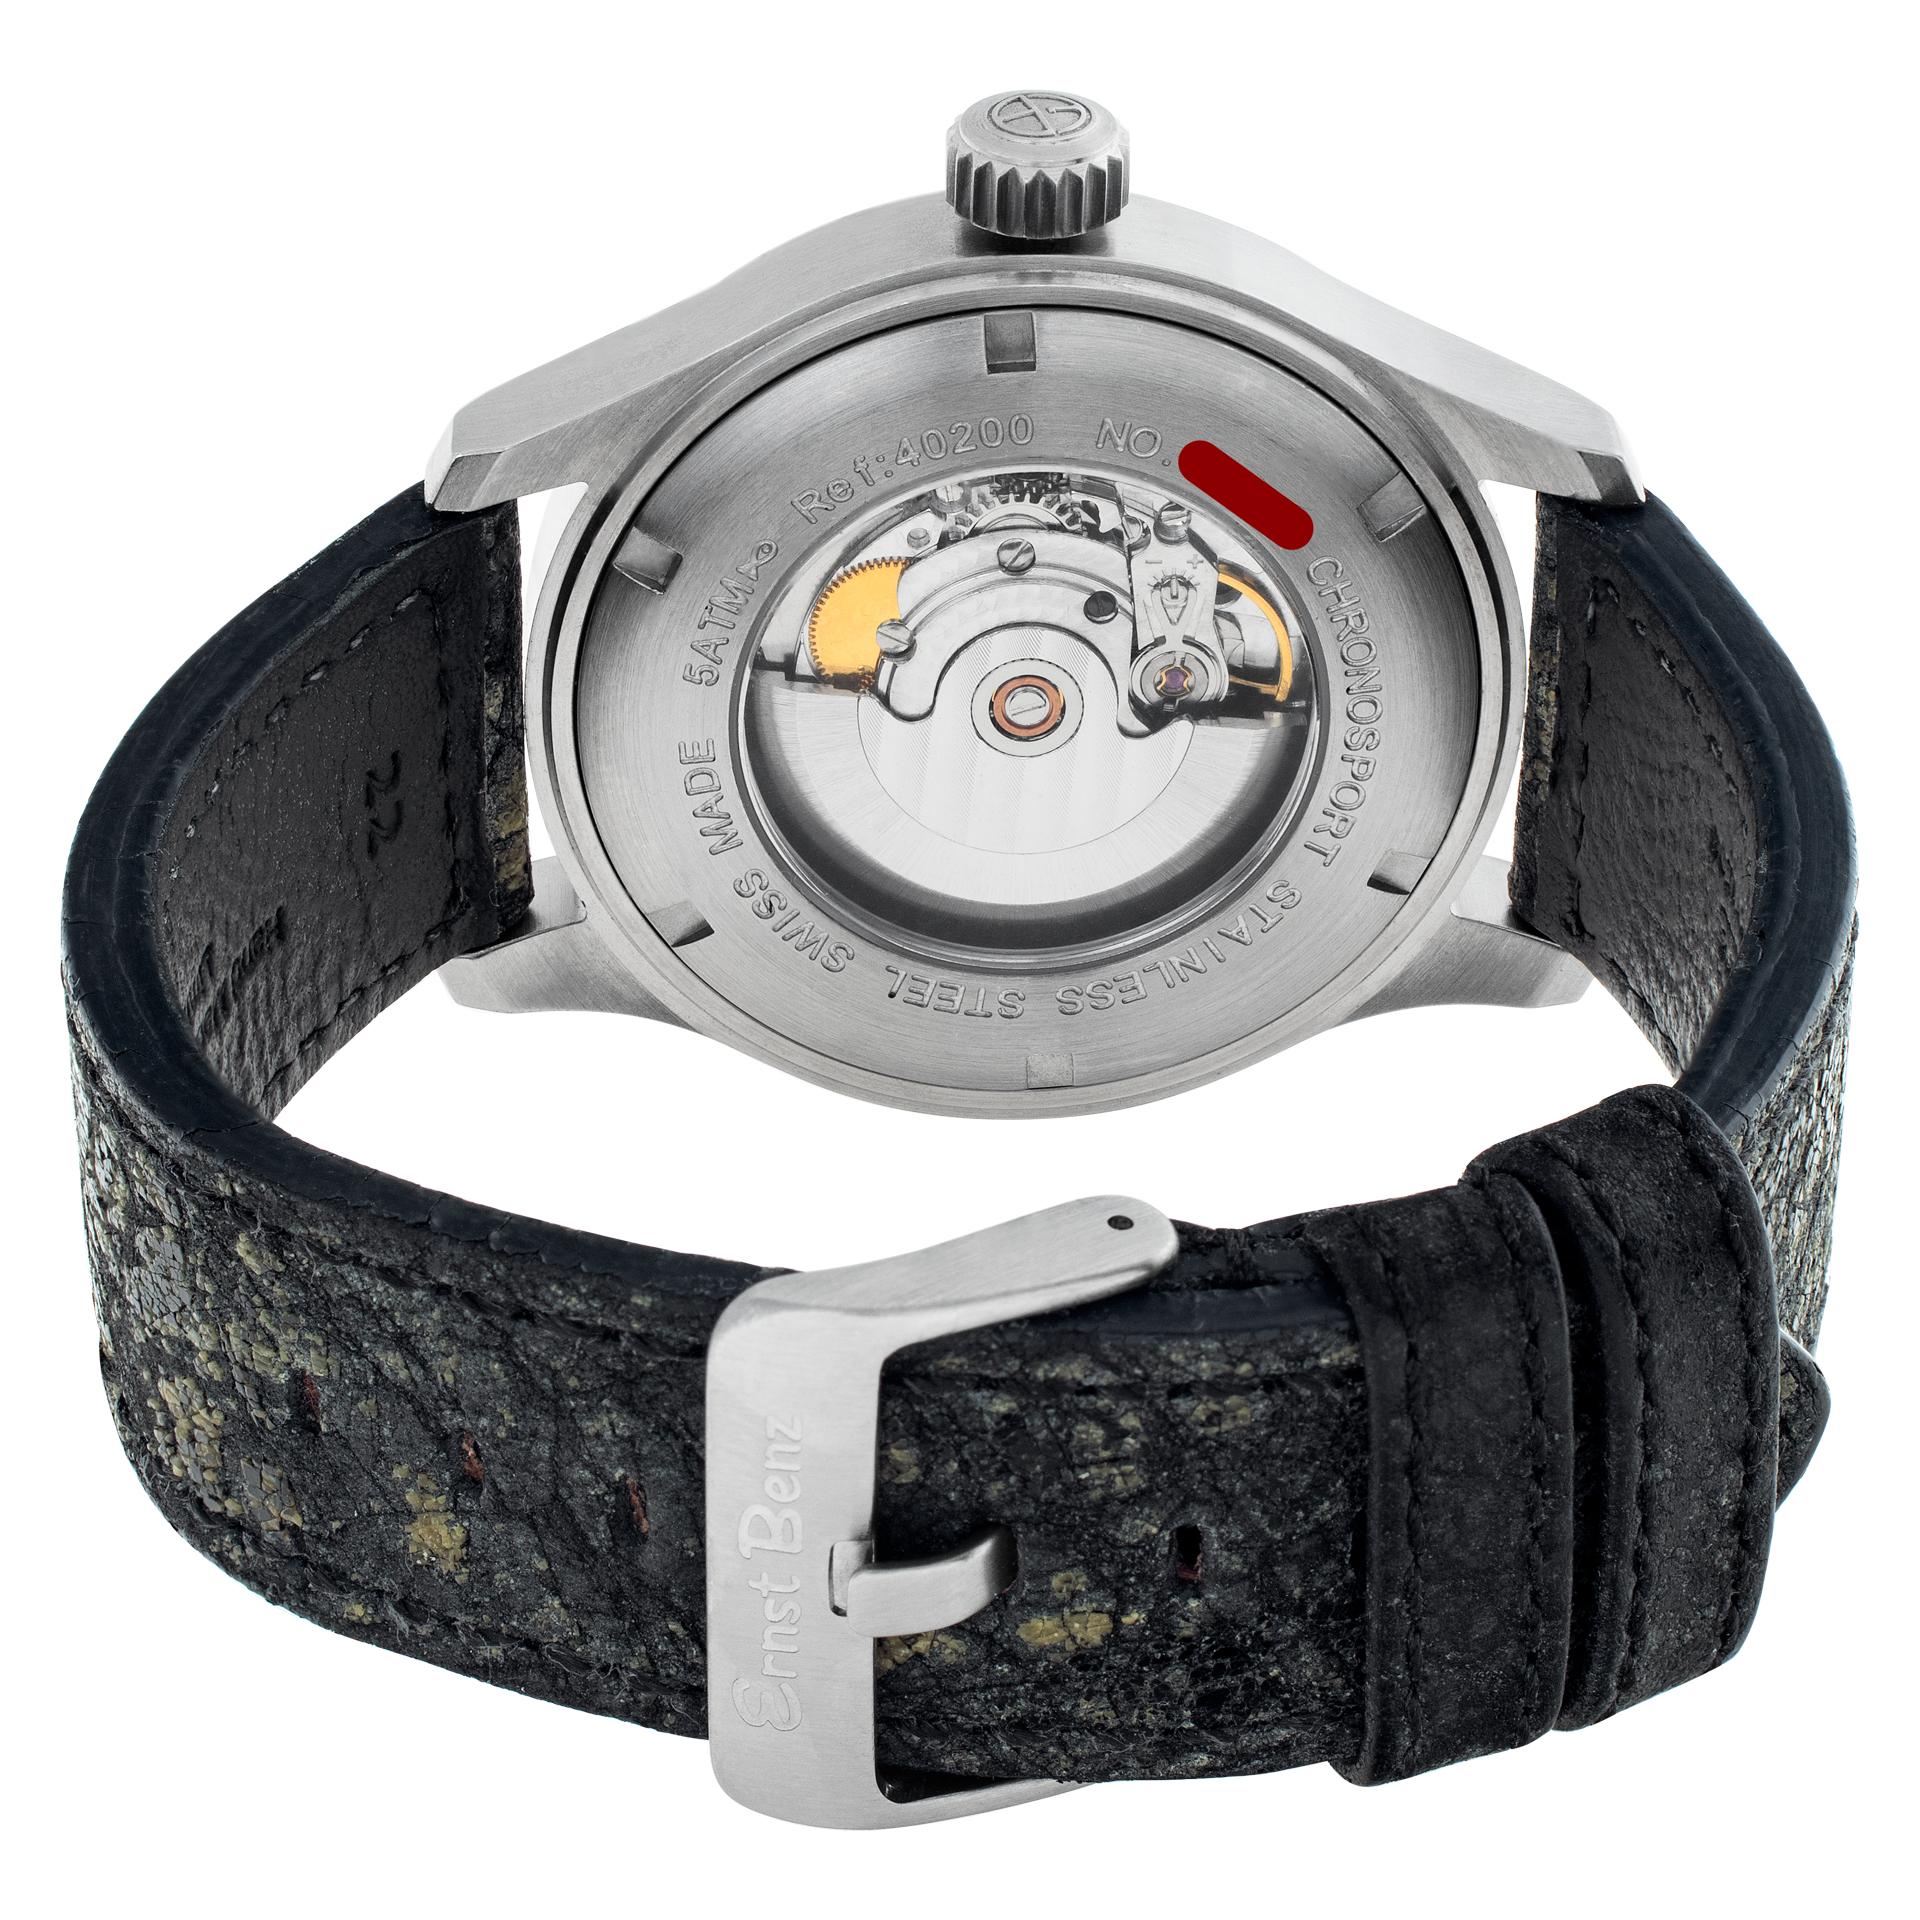 Ernst Benz Chronosport Stainless Steel Wristwatch Ref 40200 In Excellent Condition For Sale In Surfside, FL